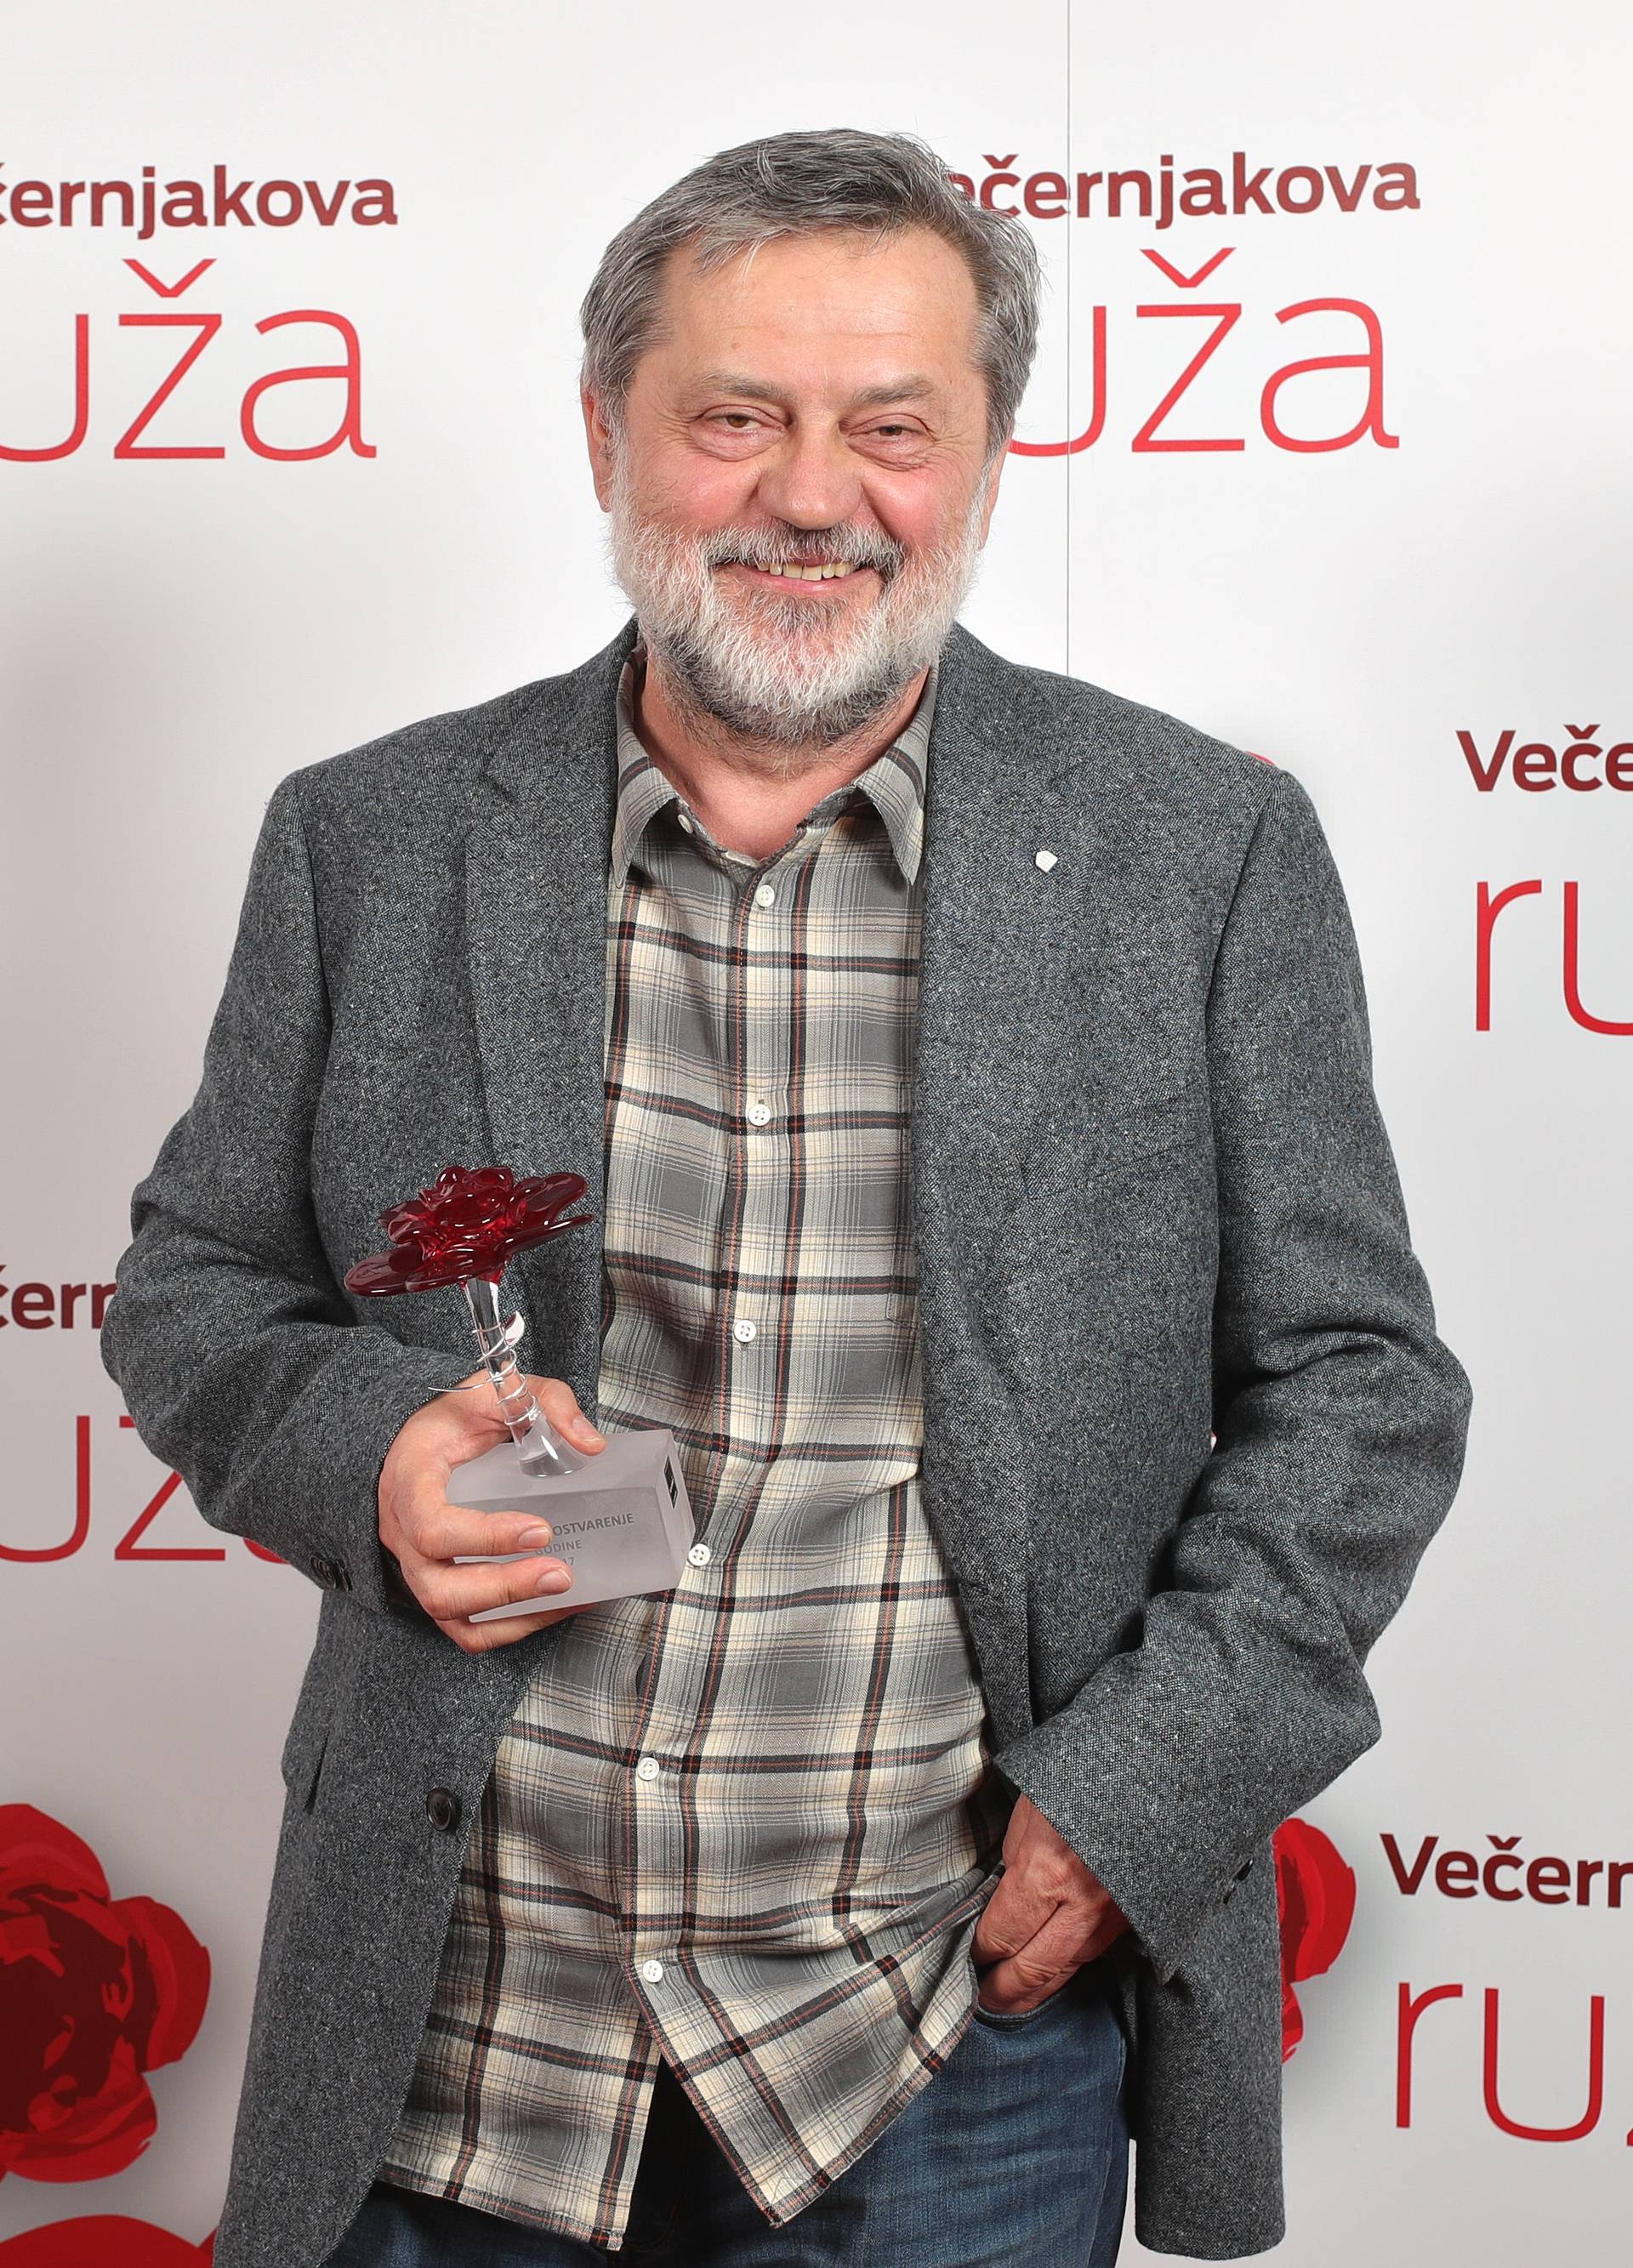 Spektakl u zagrebačkom HNK: Dodijeljene Večernjakove ruže